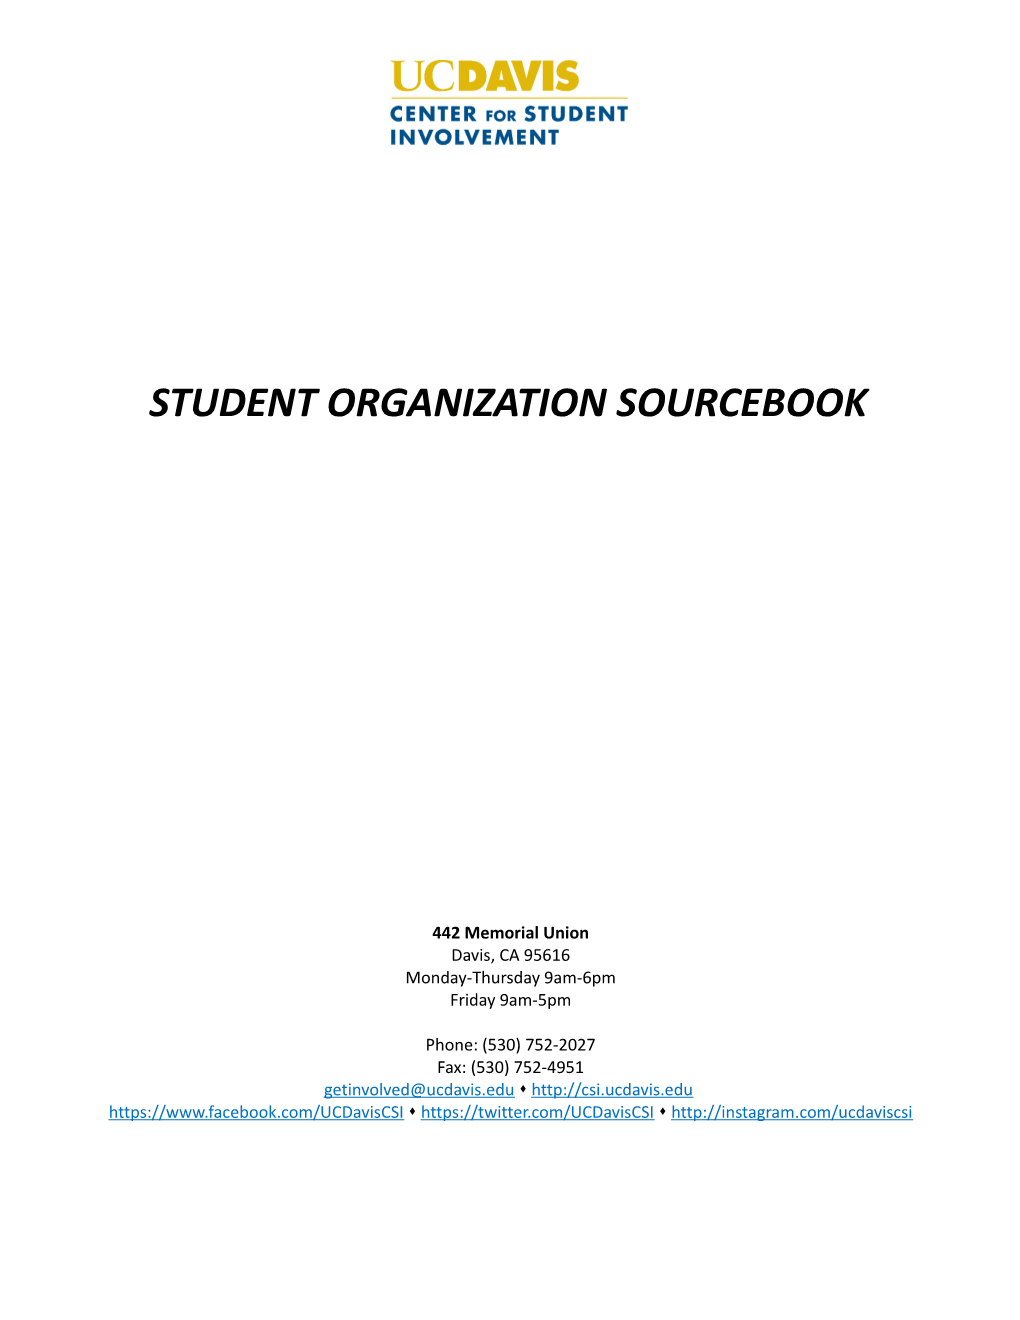 Student Organization Sourcebook